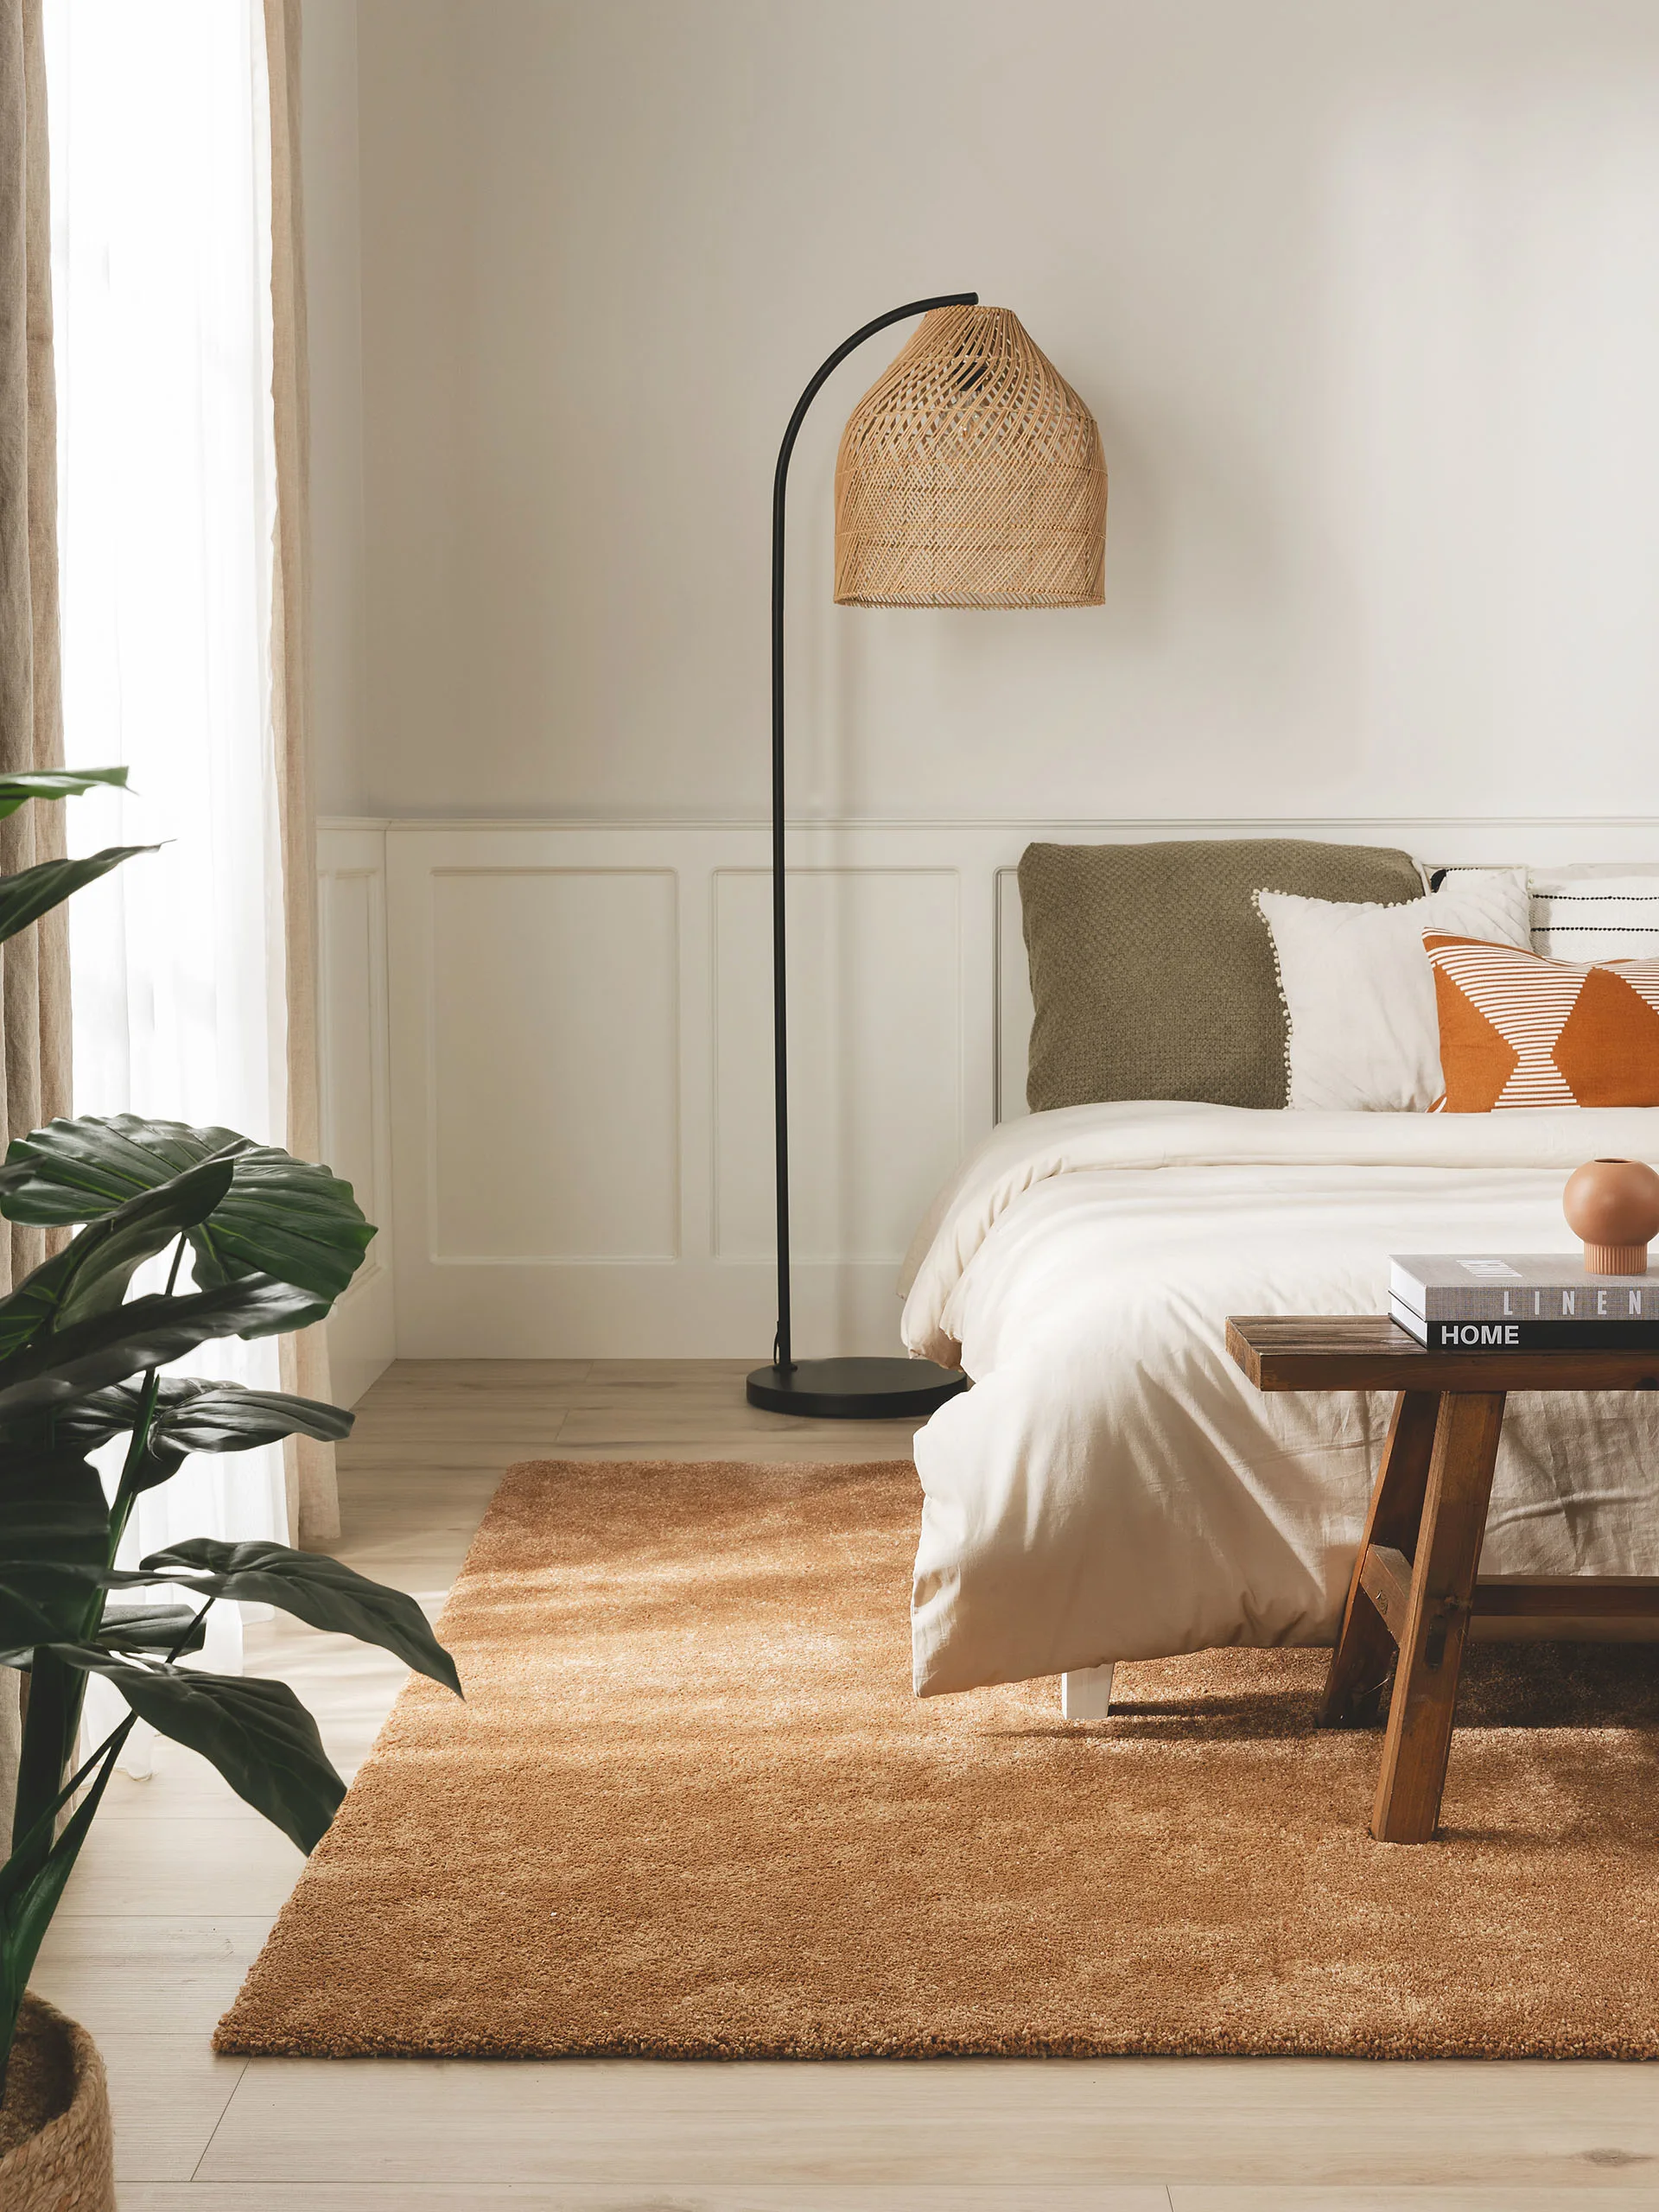 Schlafzimmer im Landhausstil mit Stehlampe aus Rattangeflecht, großem Bett dekoriert mit Kissen in Olivgrün, Orange und Weiß und einem Hochflorteppich in einem erdigen Orange-Ton